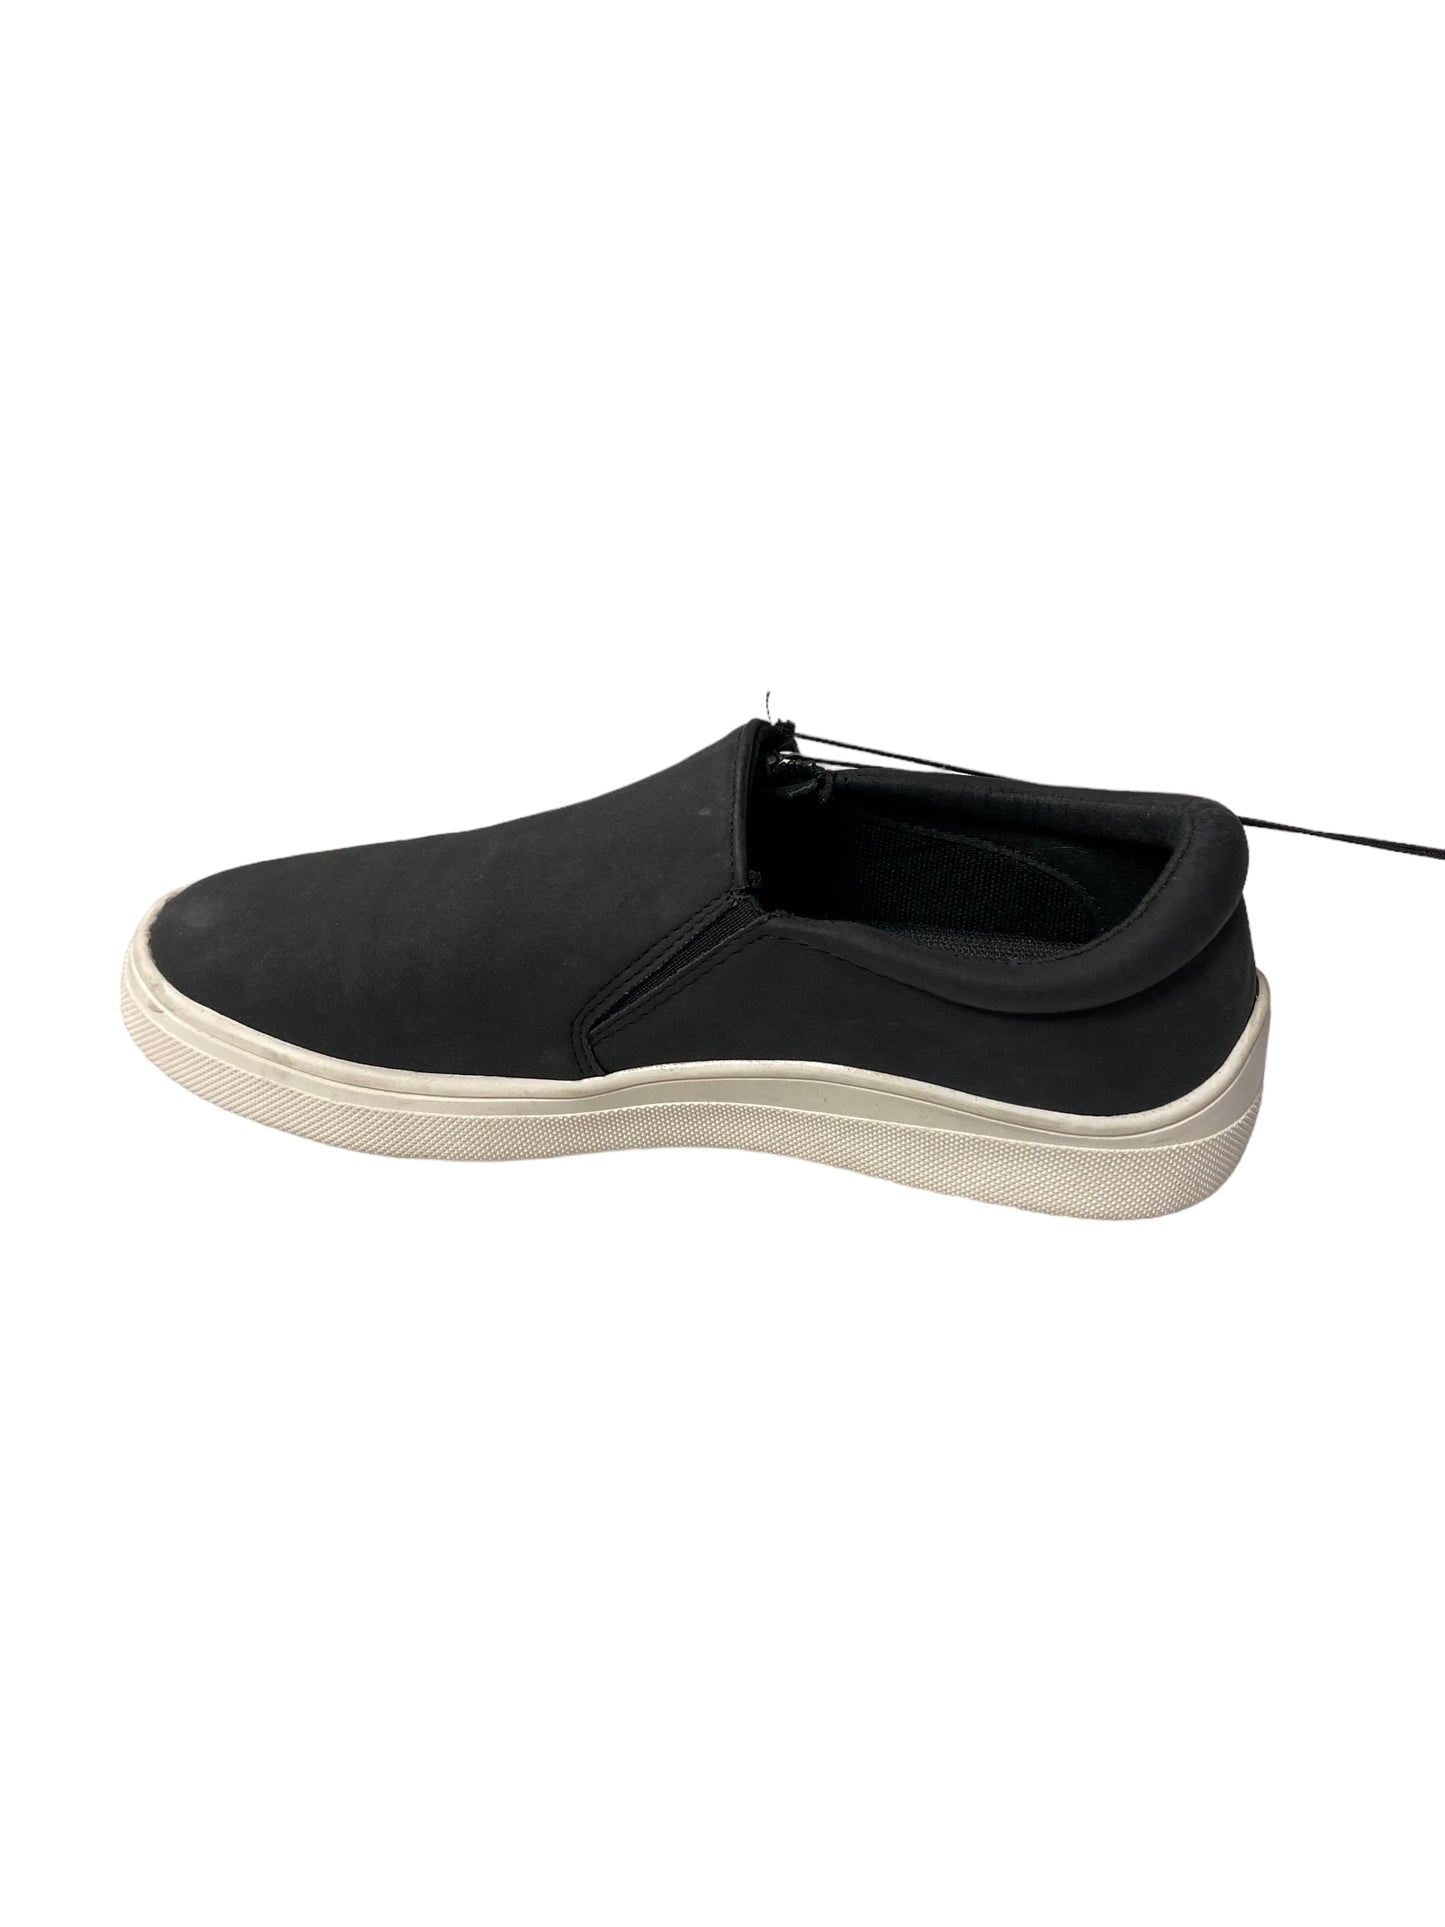 Black Shoes Sneakers Kensie, Size 6.5